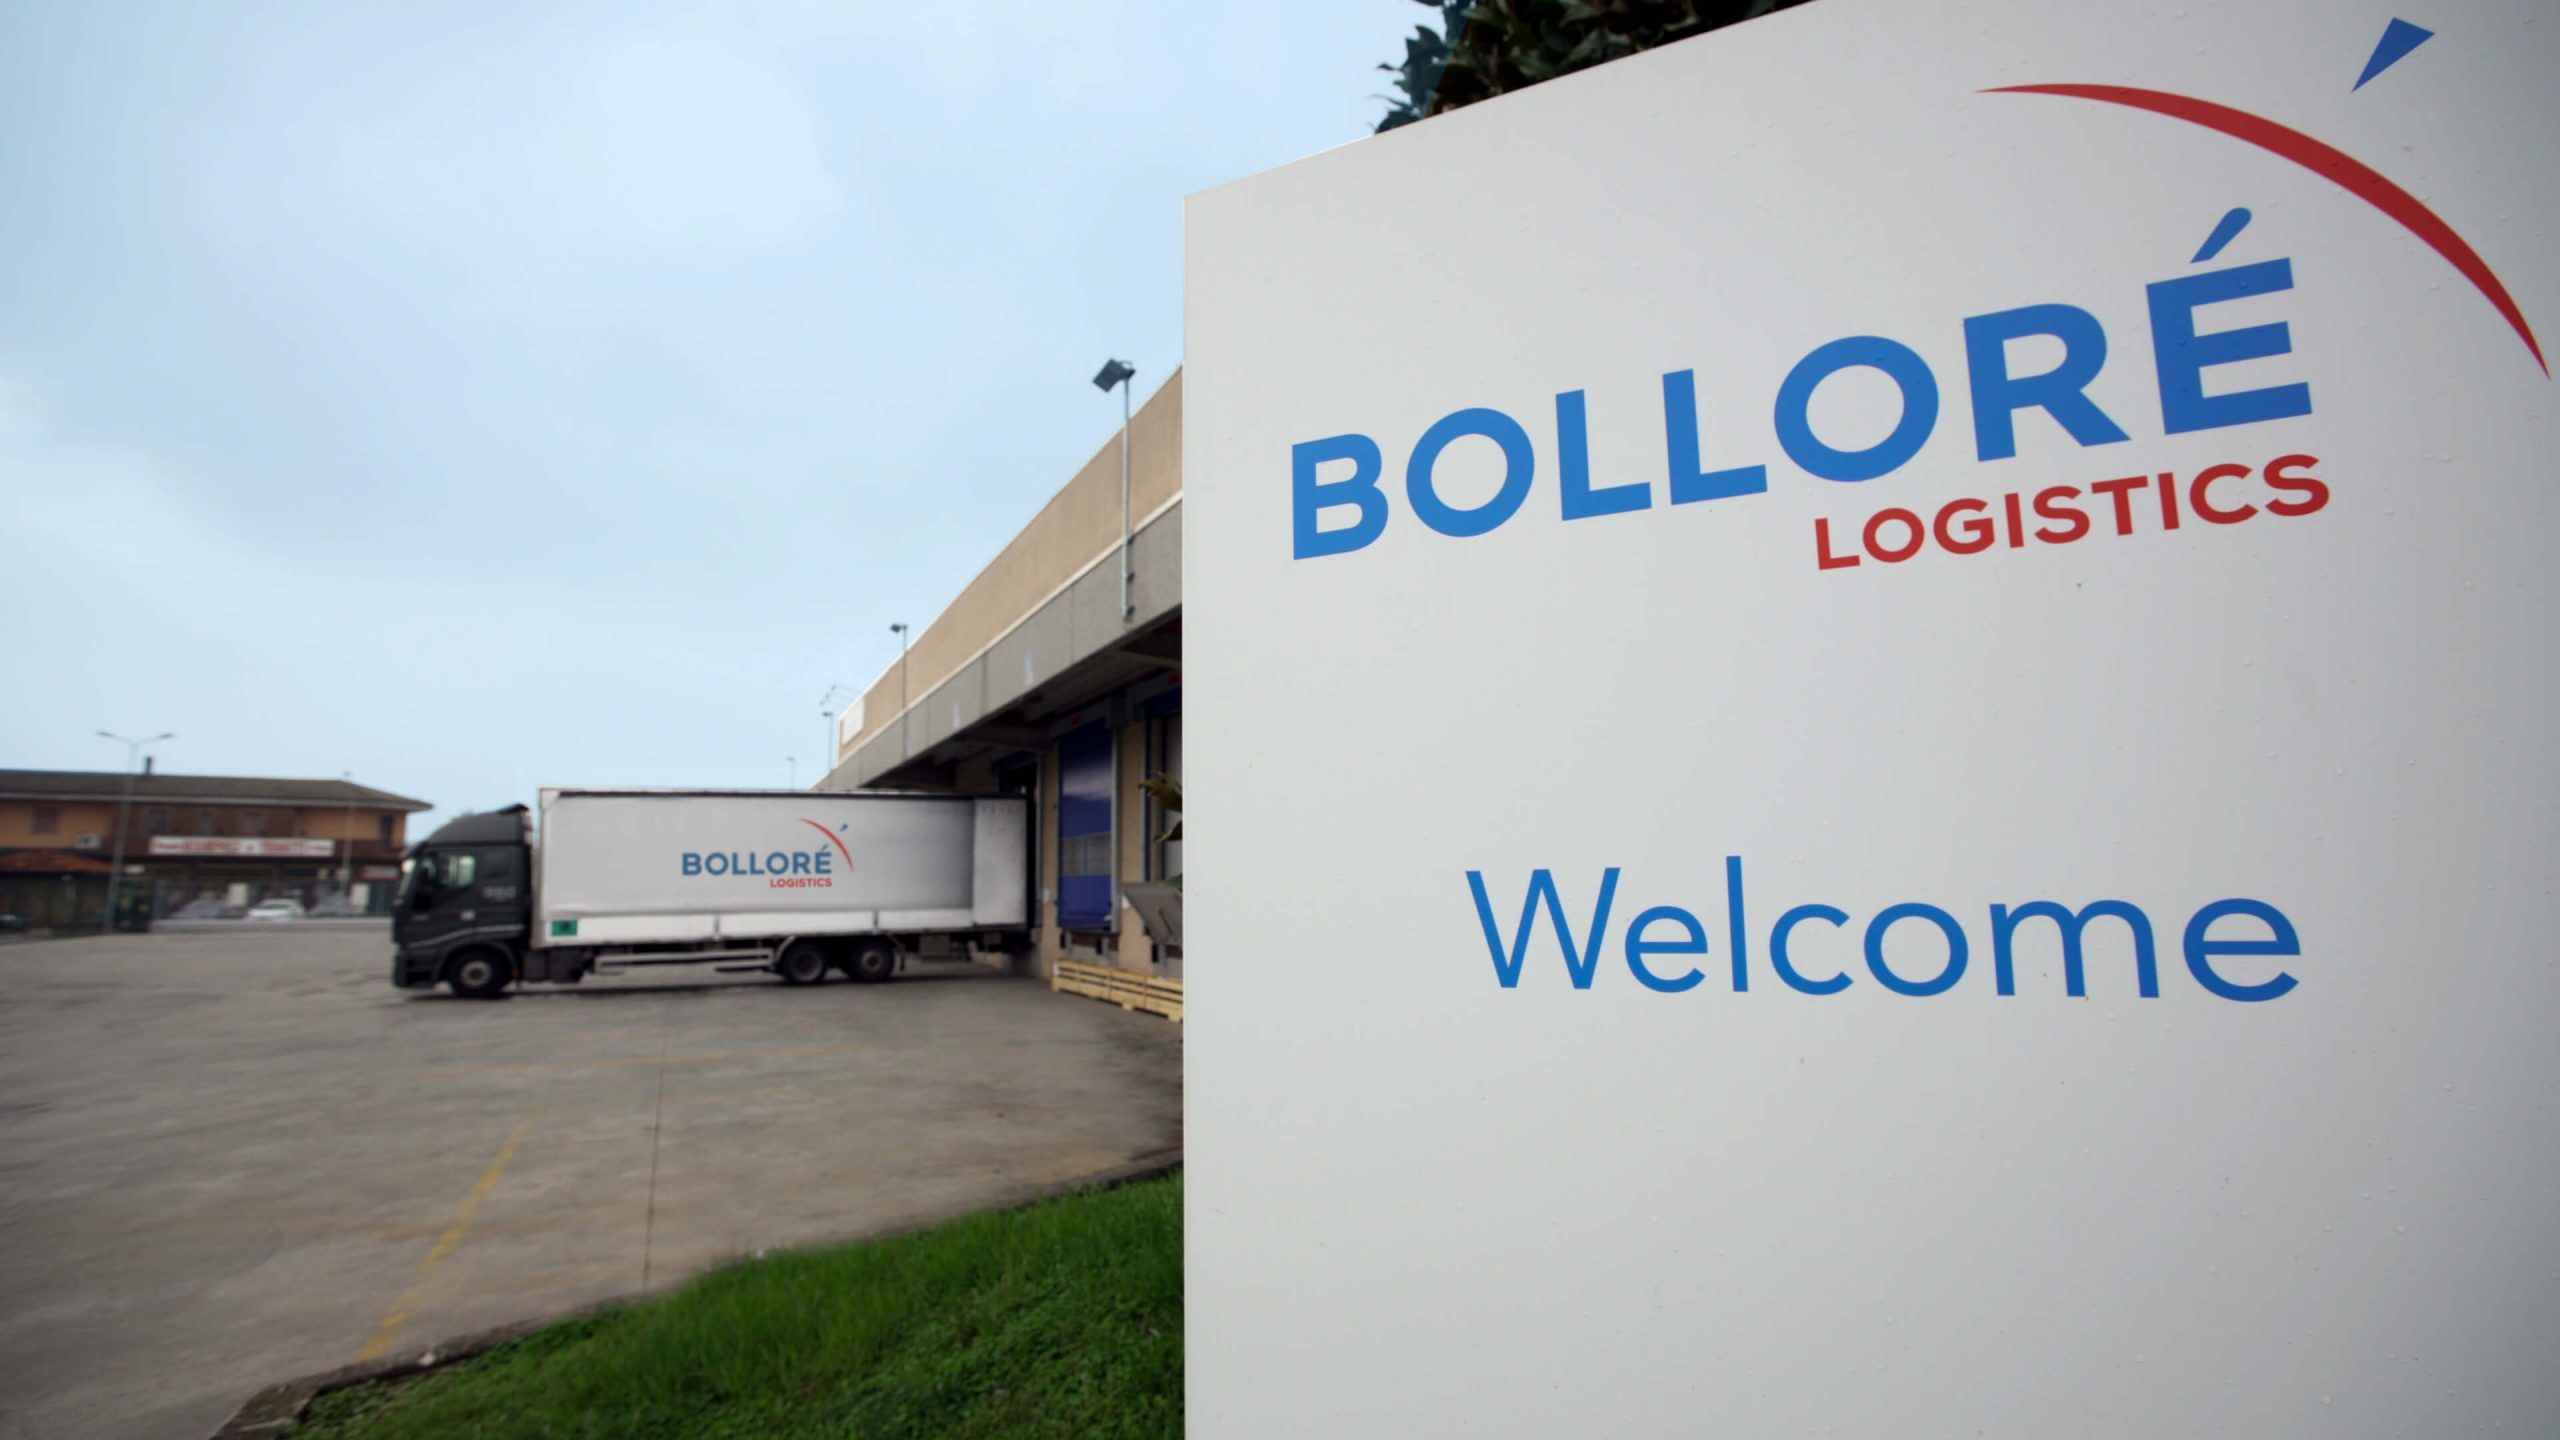 Bollore Logistics LLC needs Business Development Manager